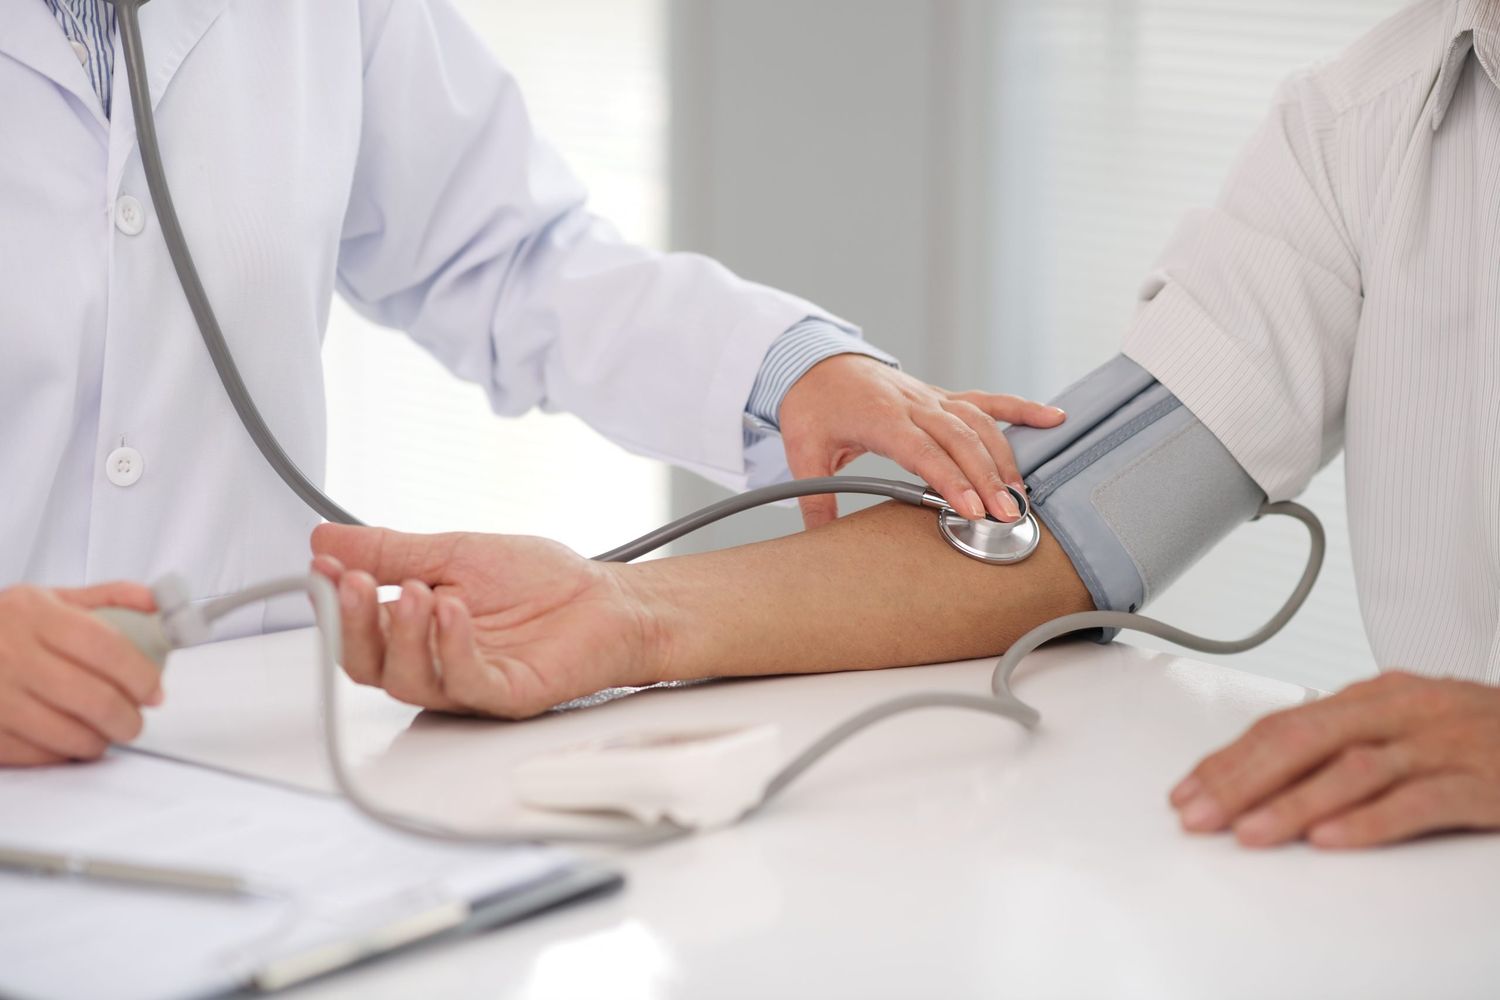 Las complicaciones de la hipertensión arterial son muy graves, tales como infarto agudo de miocardio, accidente cerebro vascular o daño renal crónico.